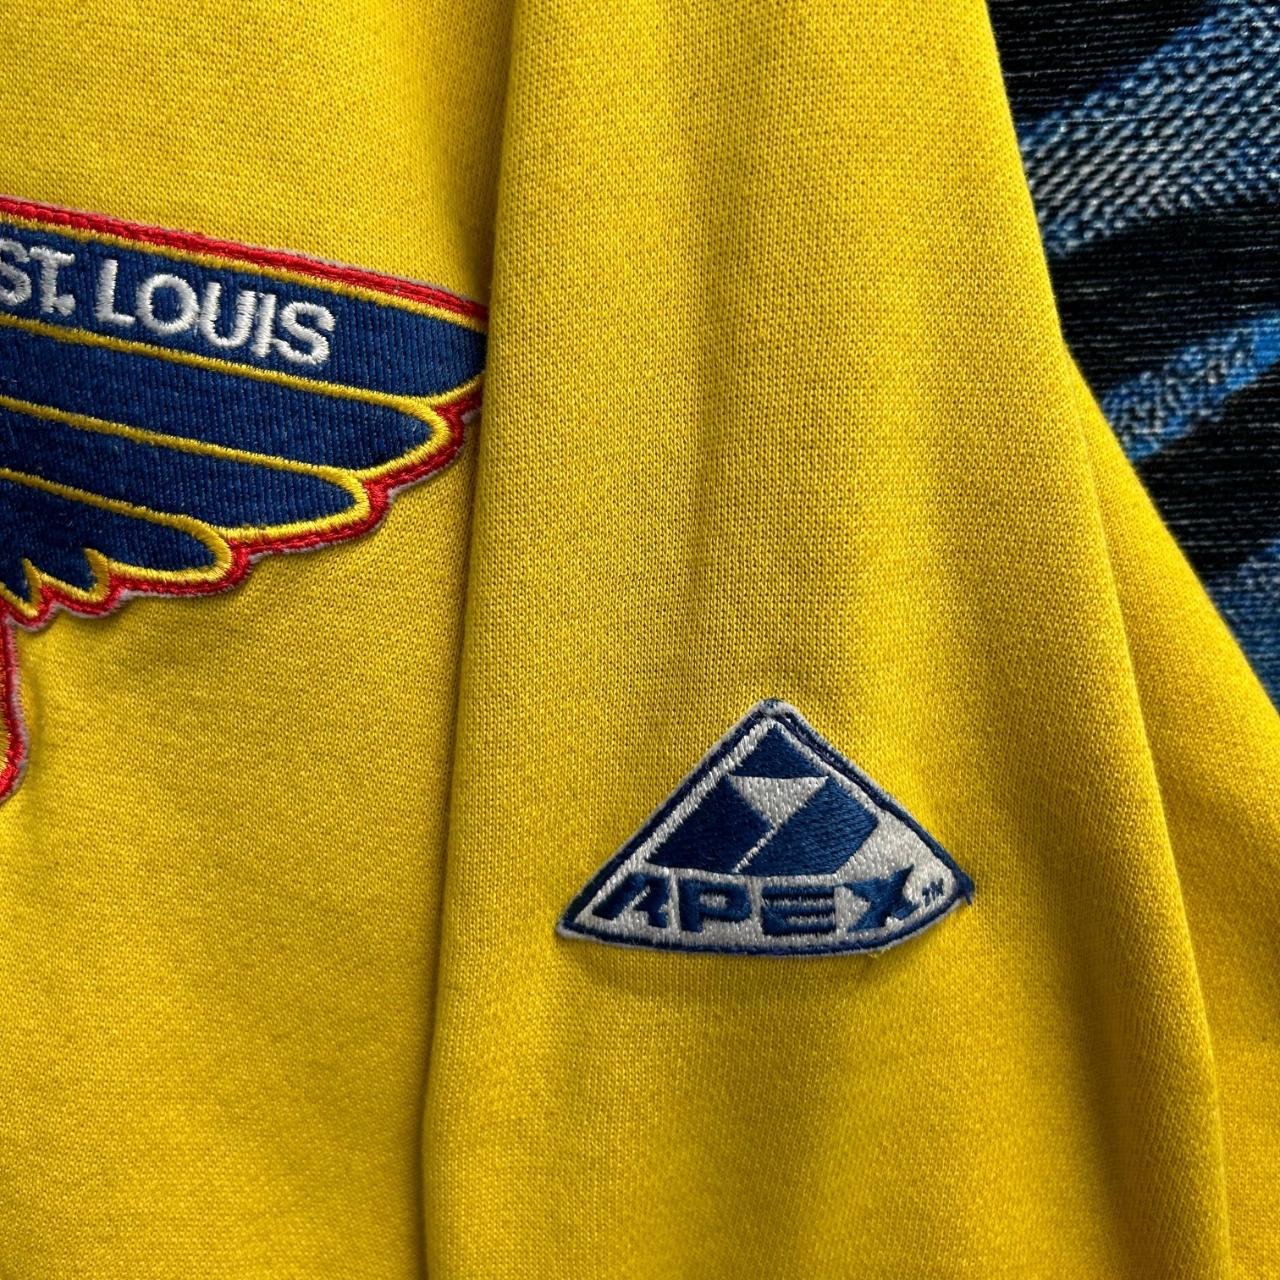 Vintage 90's St.Louis Blues Hockey Sweater Size - Depop